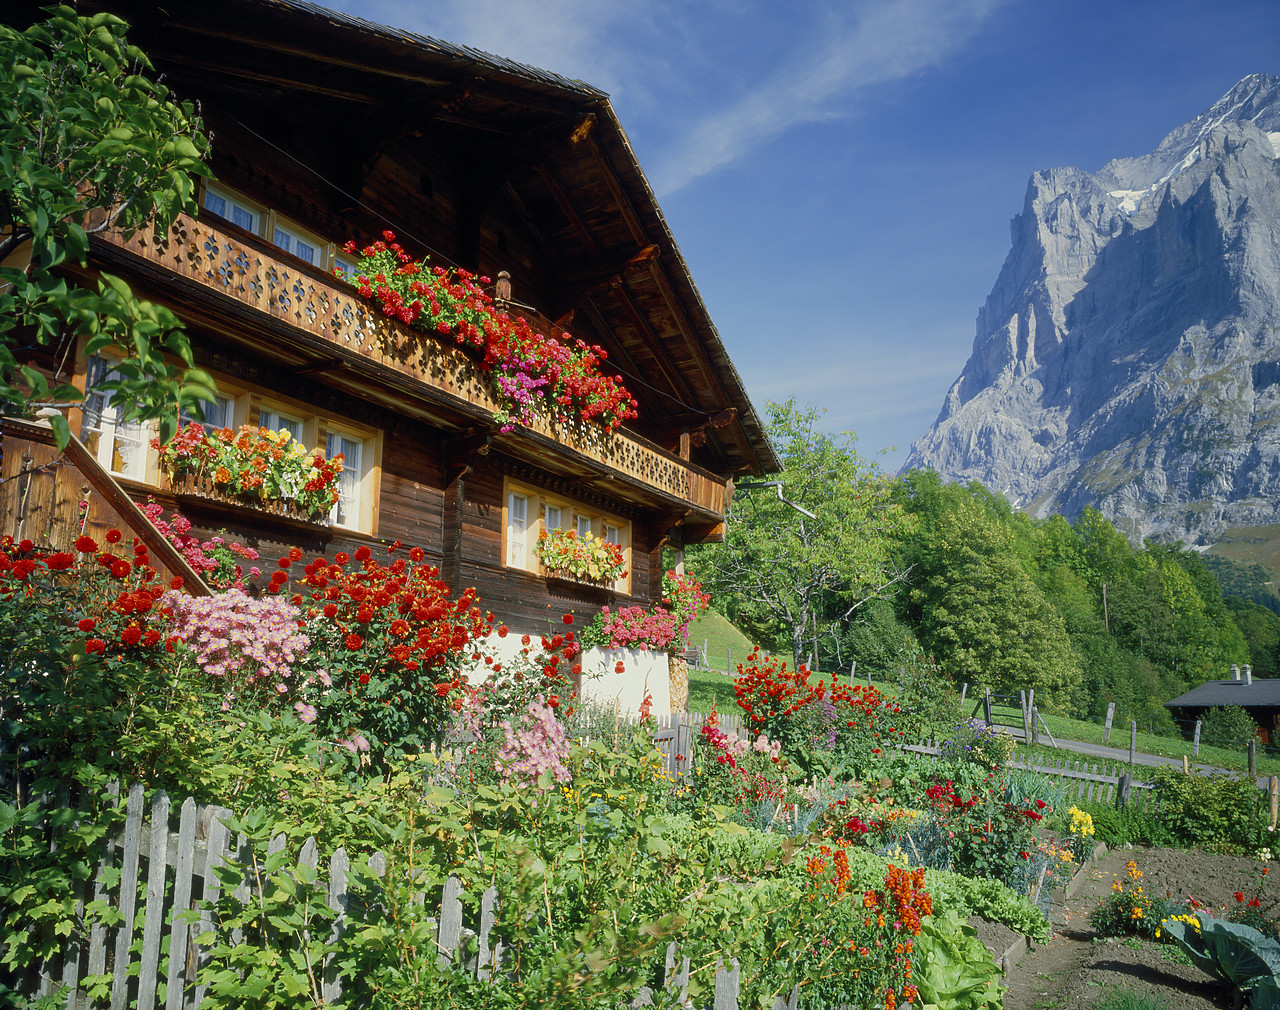 #85527-1 - Swiss Chalet & Wetterhorn, Grindelwald, Switzerland